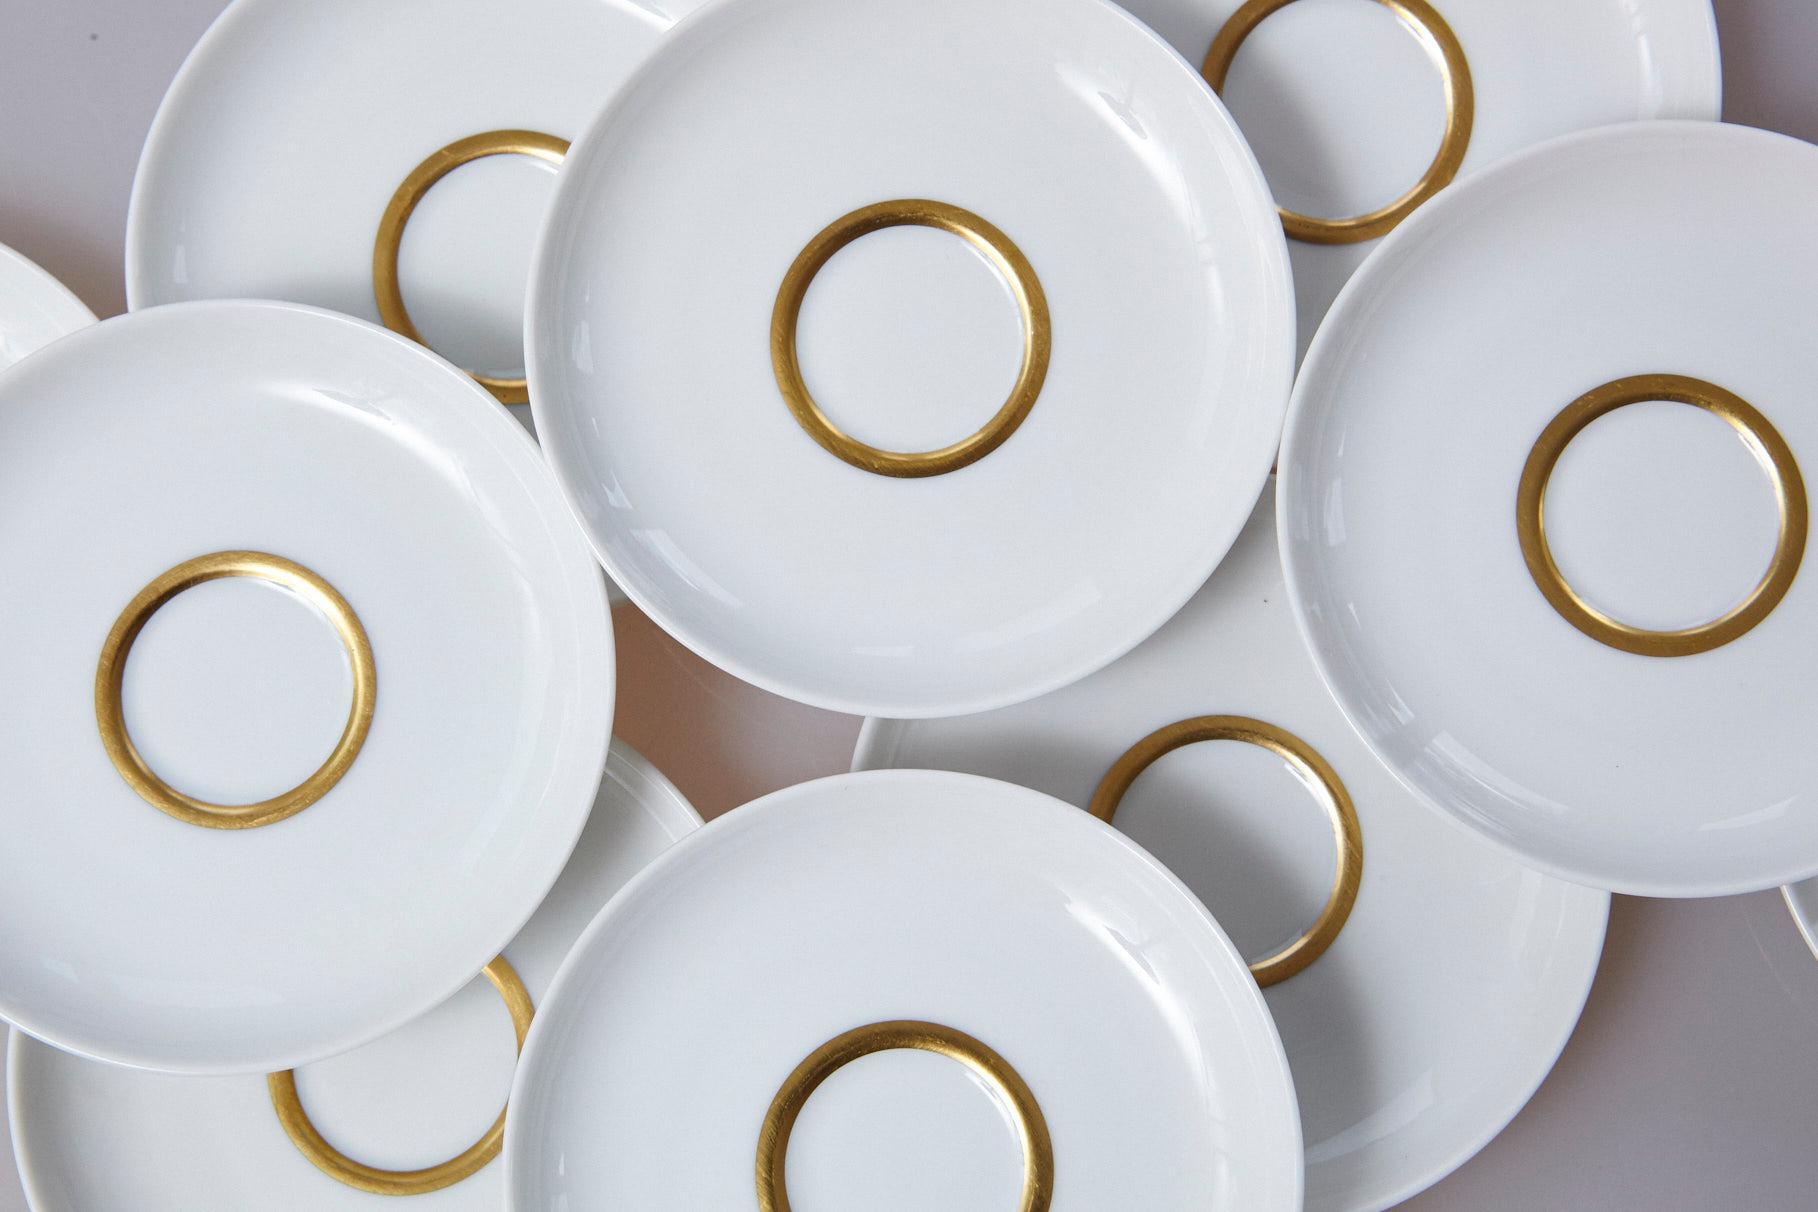 Set of 10 White and Gold Fürstenberg Porcelain Demitasse Cups & Saucers, Germany 3